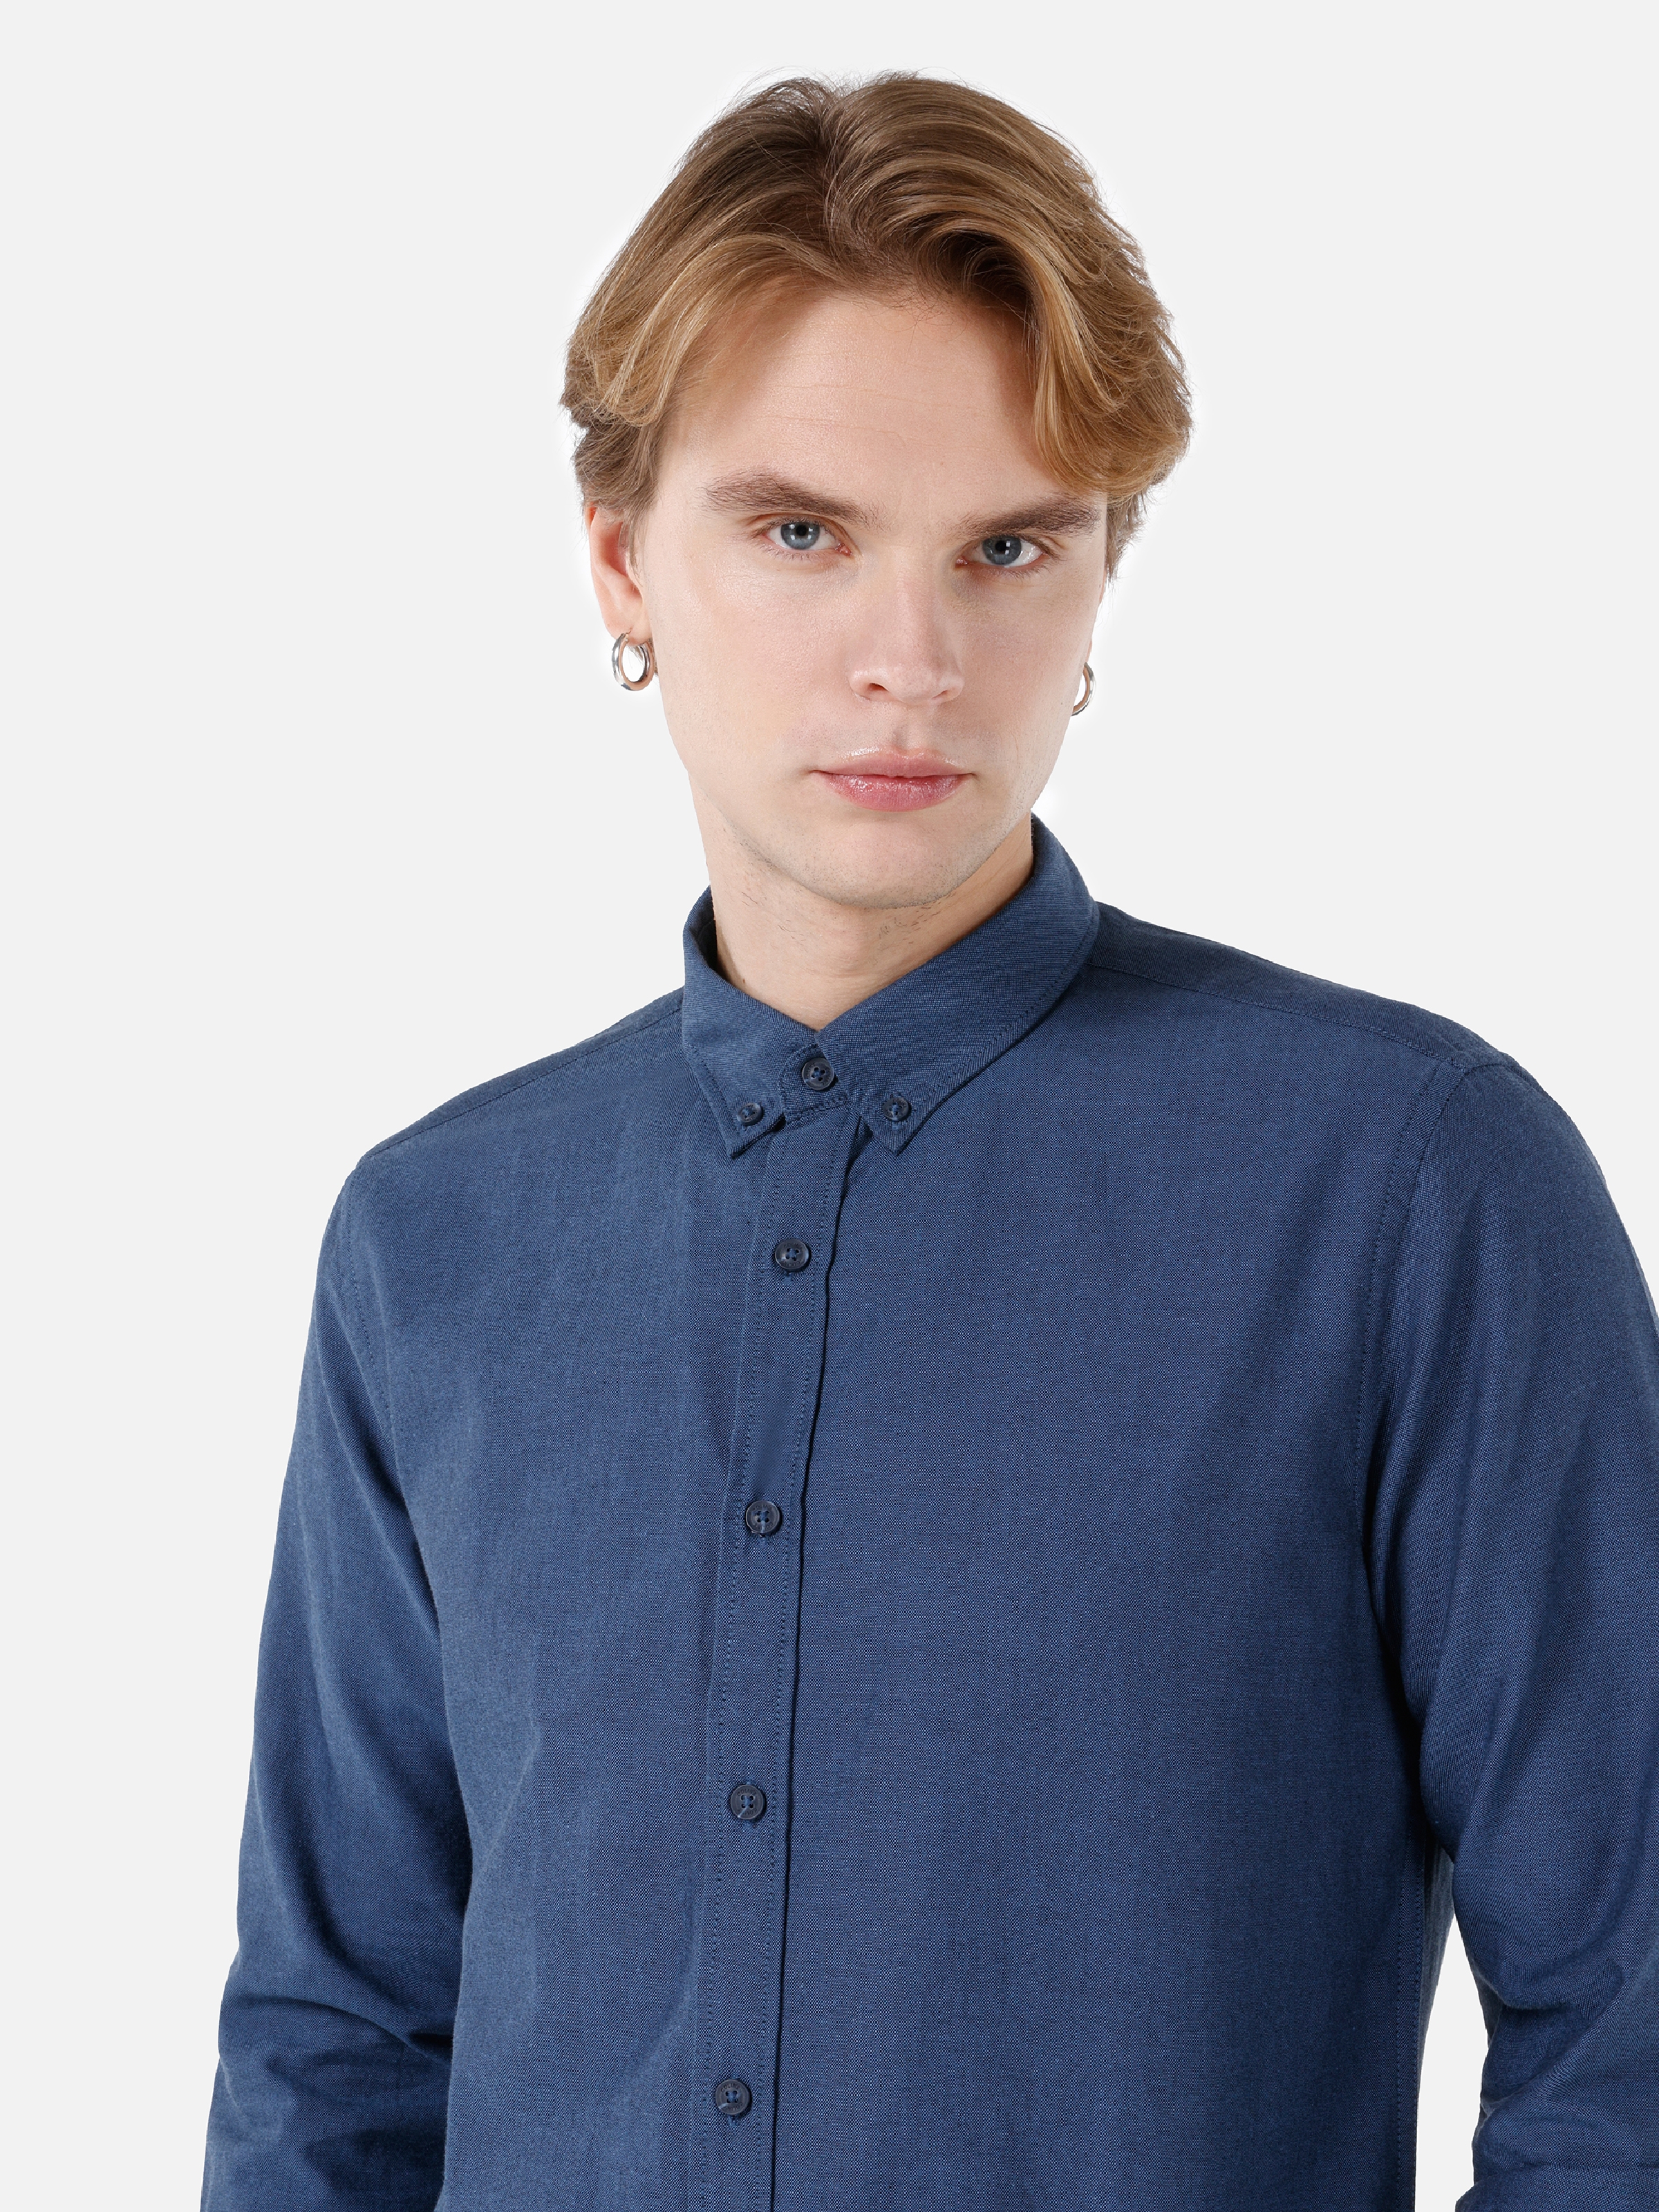 Afficher les détails de Chemise À Manches Longues Bleu Coupe Slim Col Chemise Pour Homme